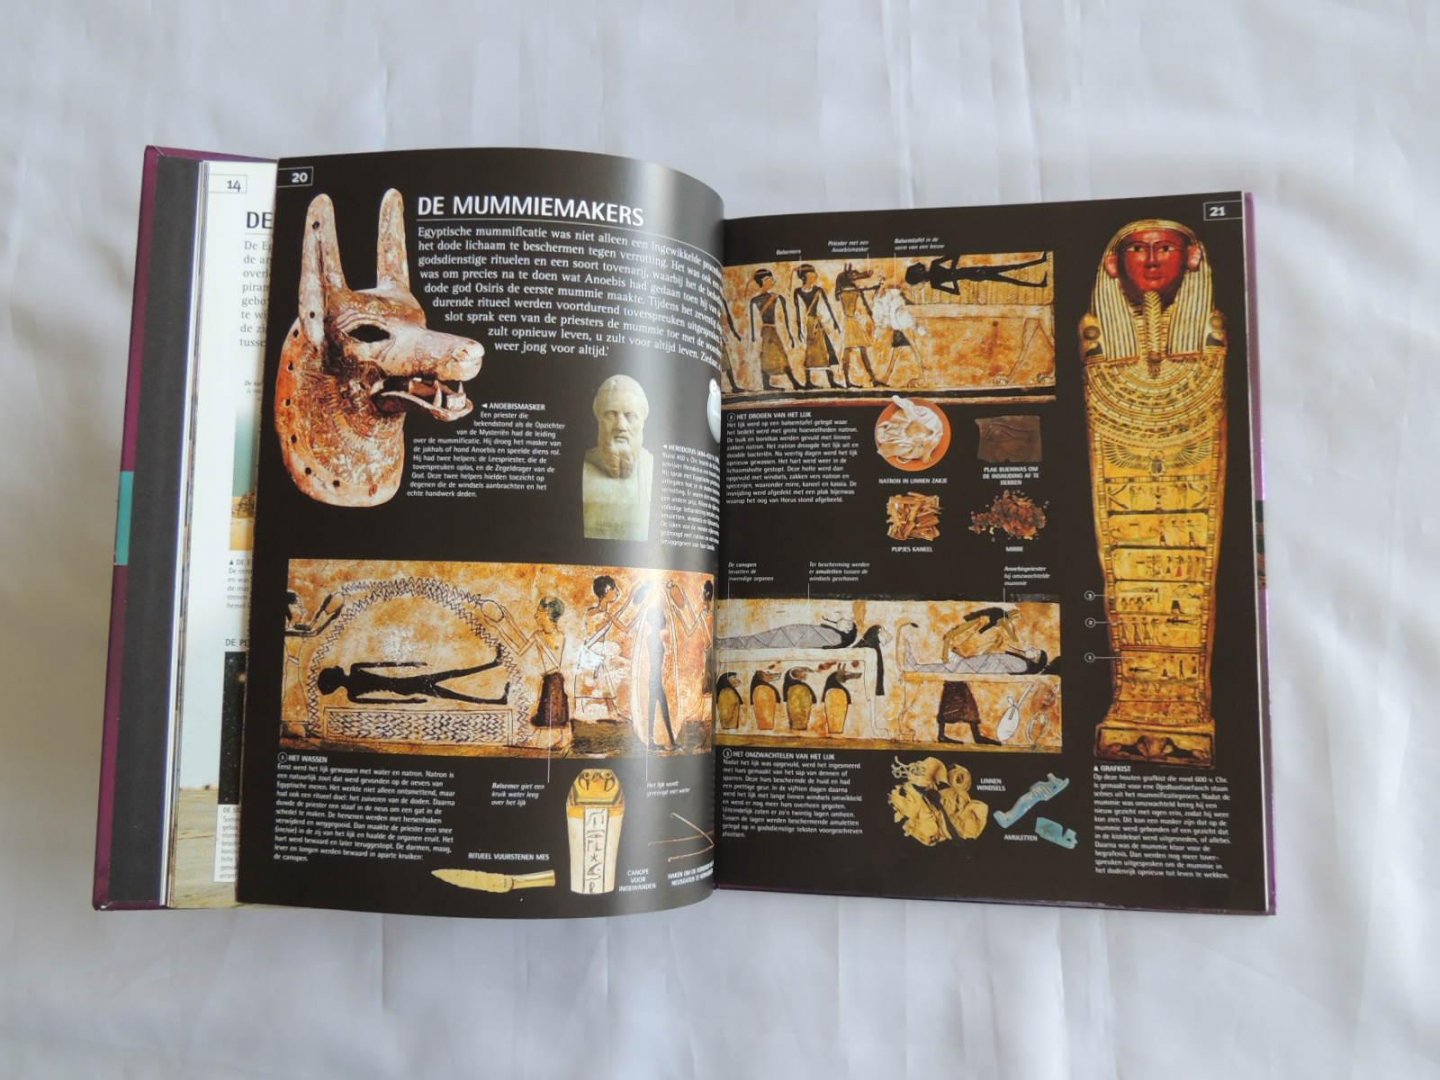 Peter Chrisp - Winkler Prins Encyclopedie van Mummies